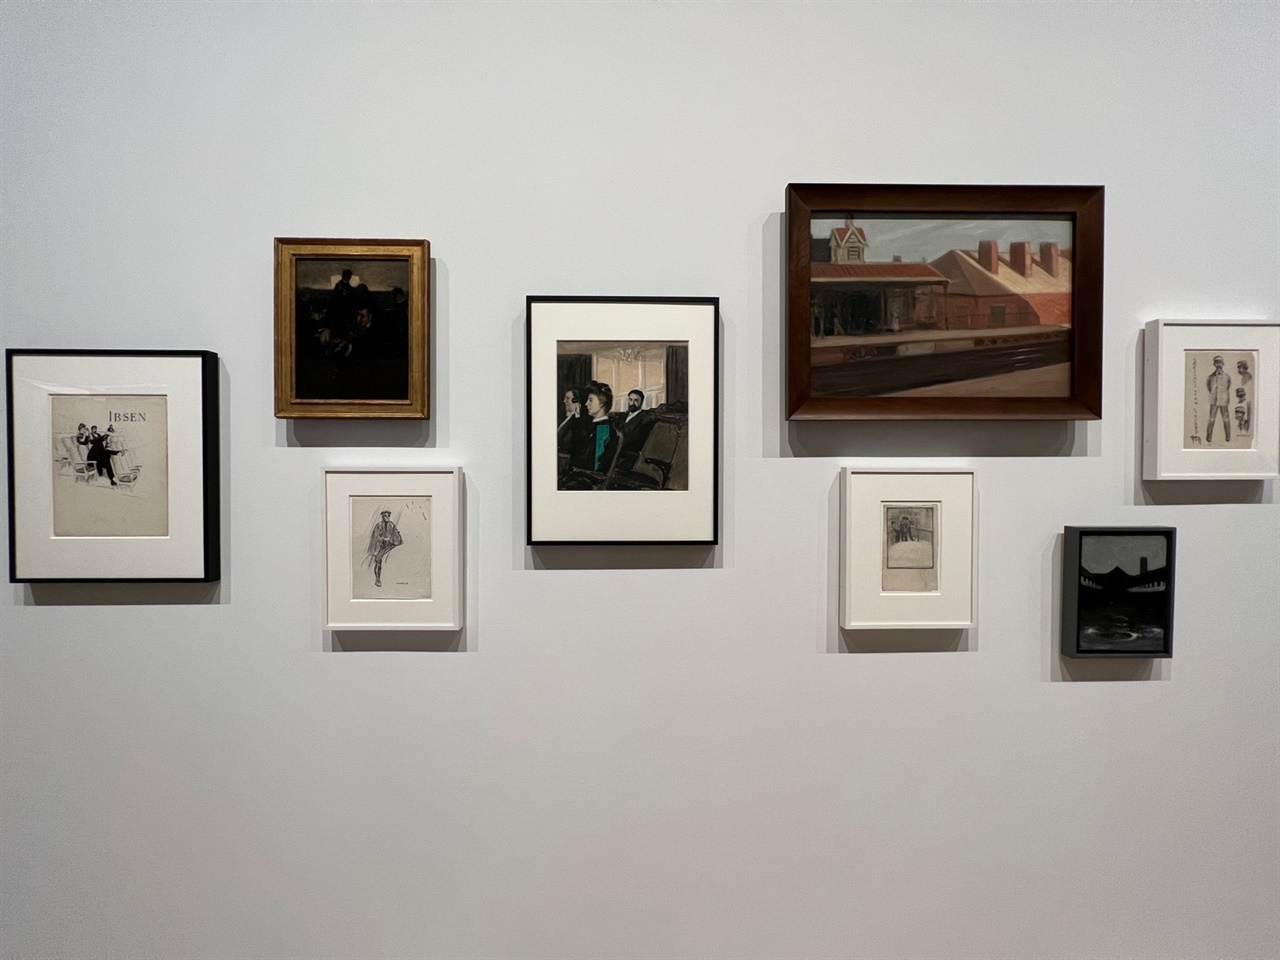 휘트니미술관의 전시장은 모두 흰색이었고 촬영이 가능했다. 작품들은 호퍼의 대표적인 특징을 보여줄 수 있는 방향으로 전시되어 있었다. 